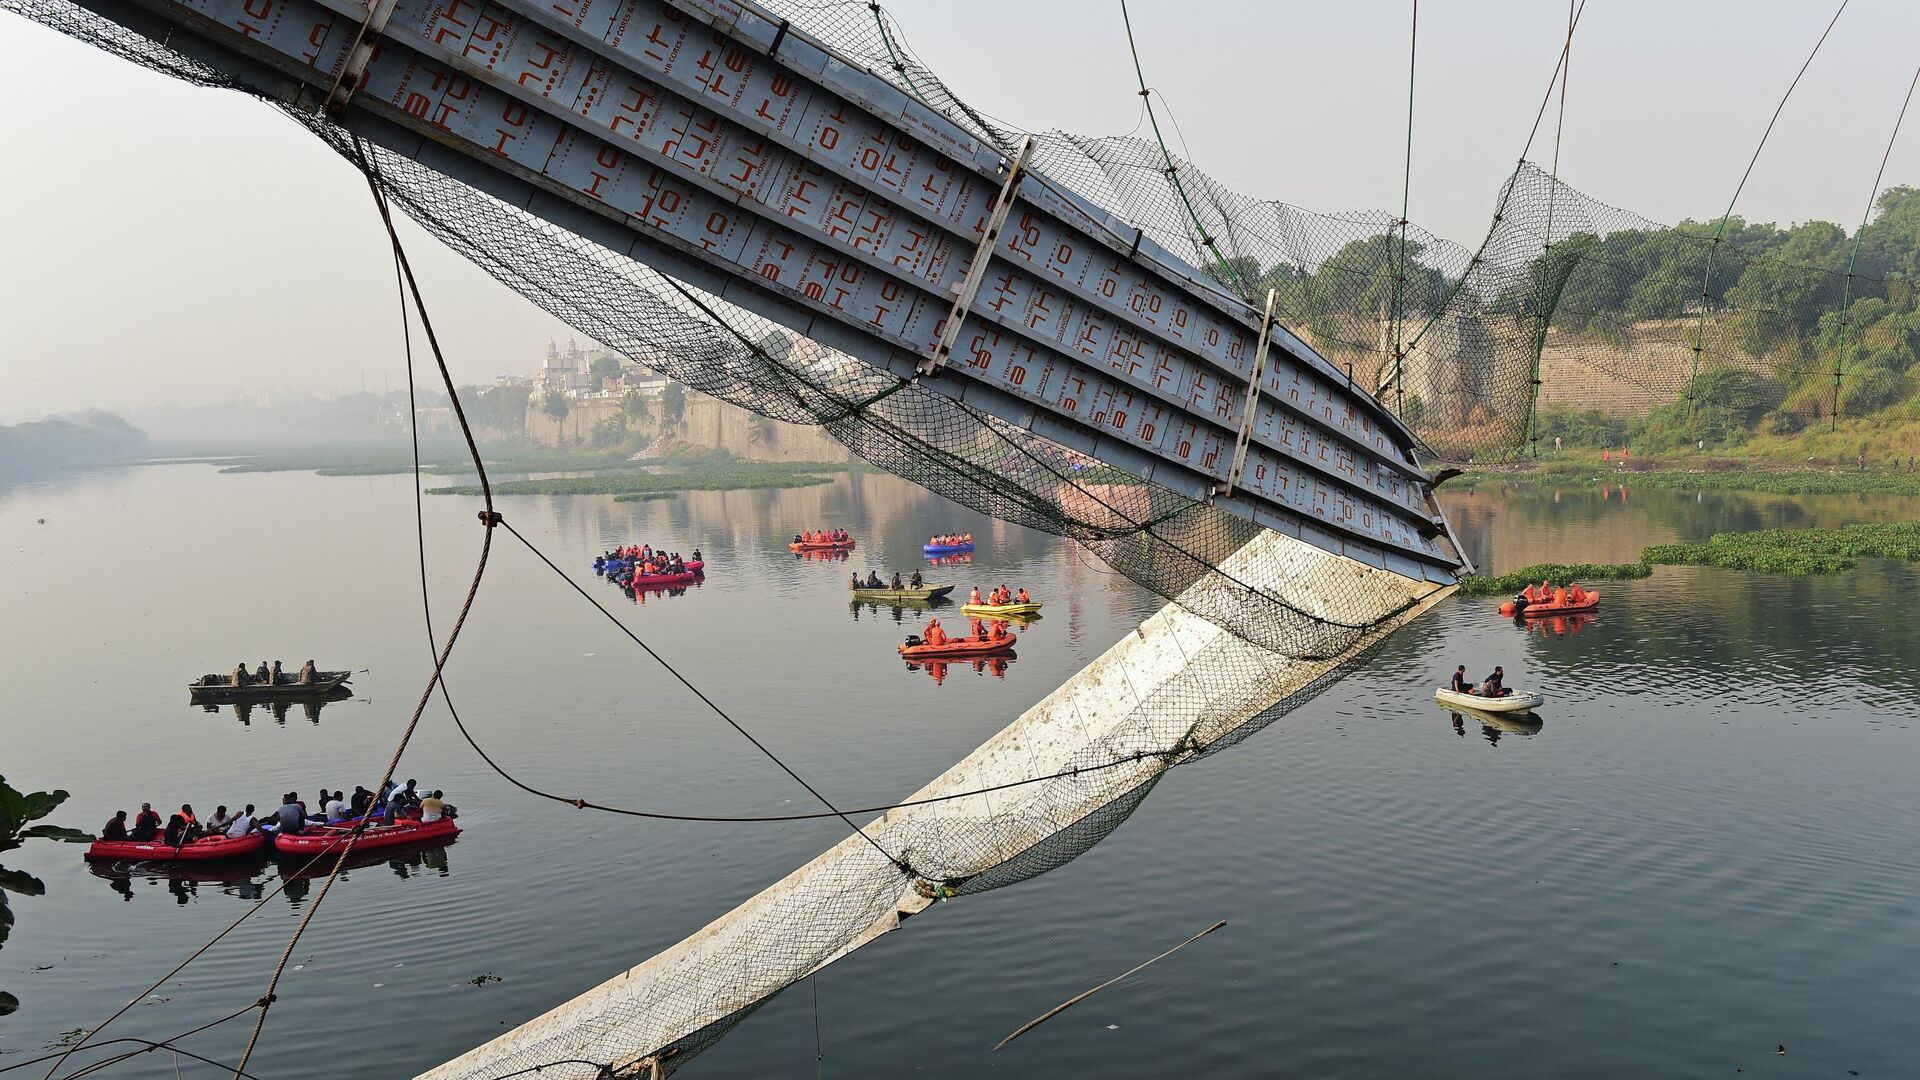 177 Orang Tewas dan 19 Lainnya Terluka dalam Insiden Runtuhnya Jembatan Kabel di Gujarat